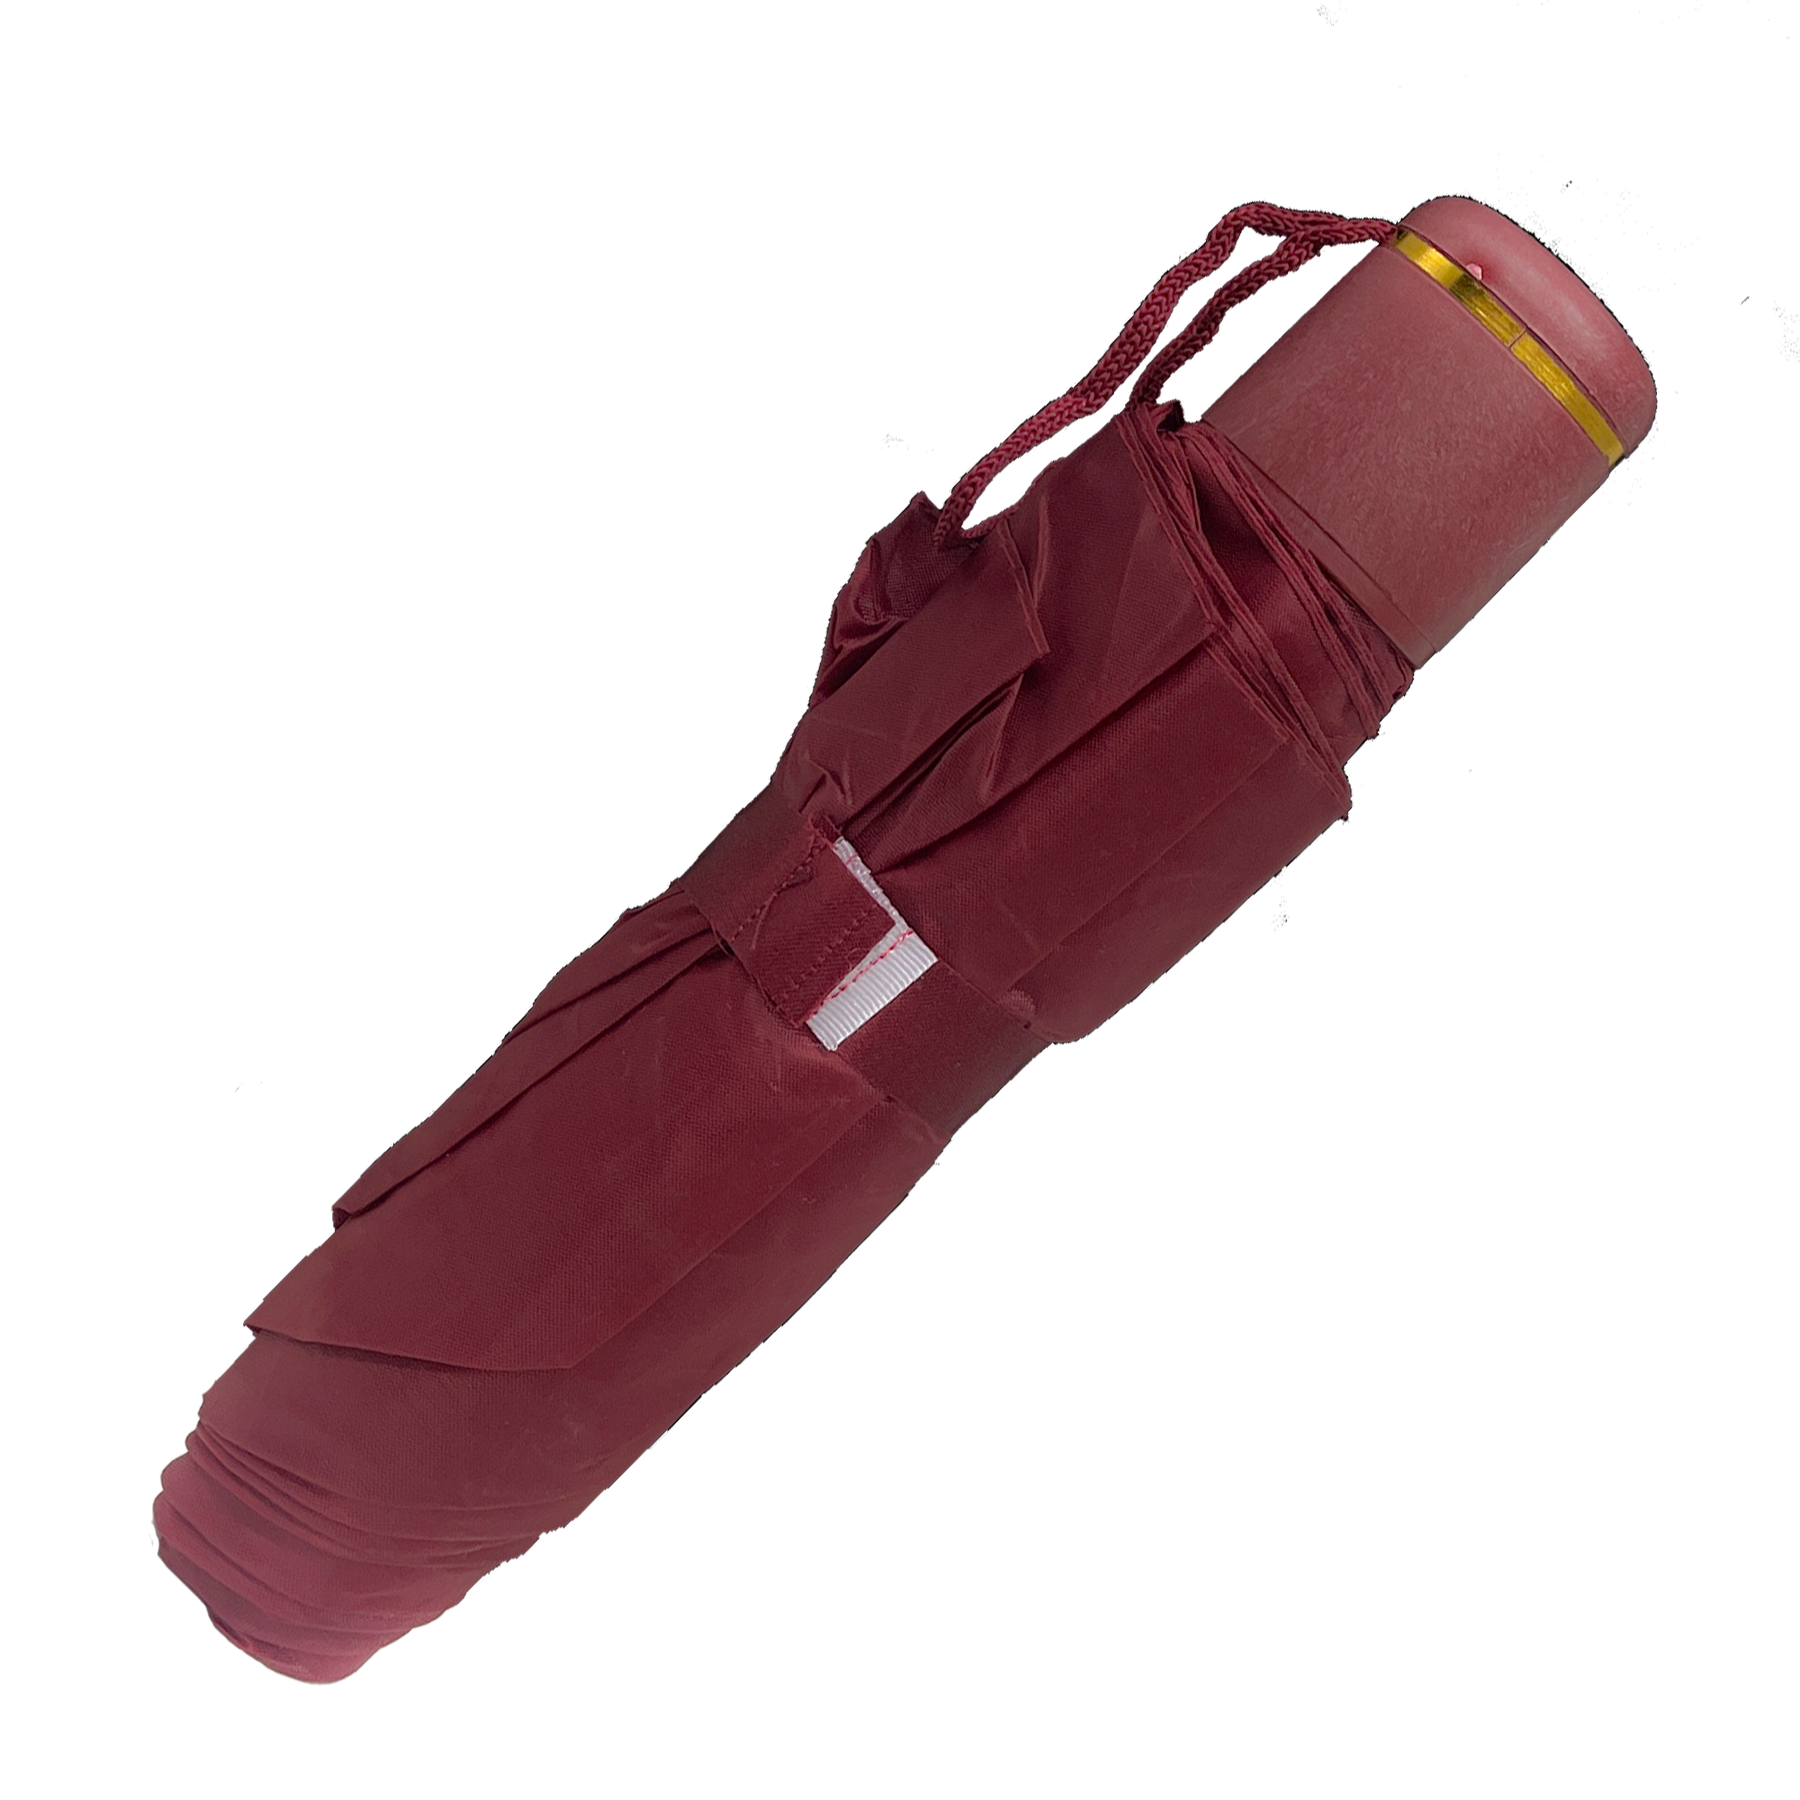 Ultra-legendarisk rejseparaply med ergonomisk ærme og håndledsrem